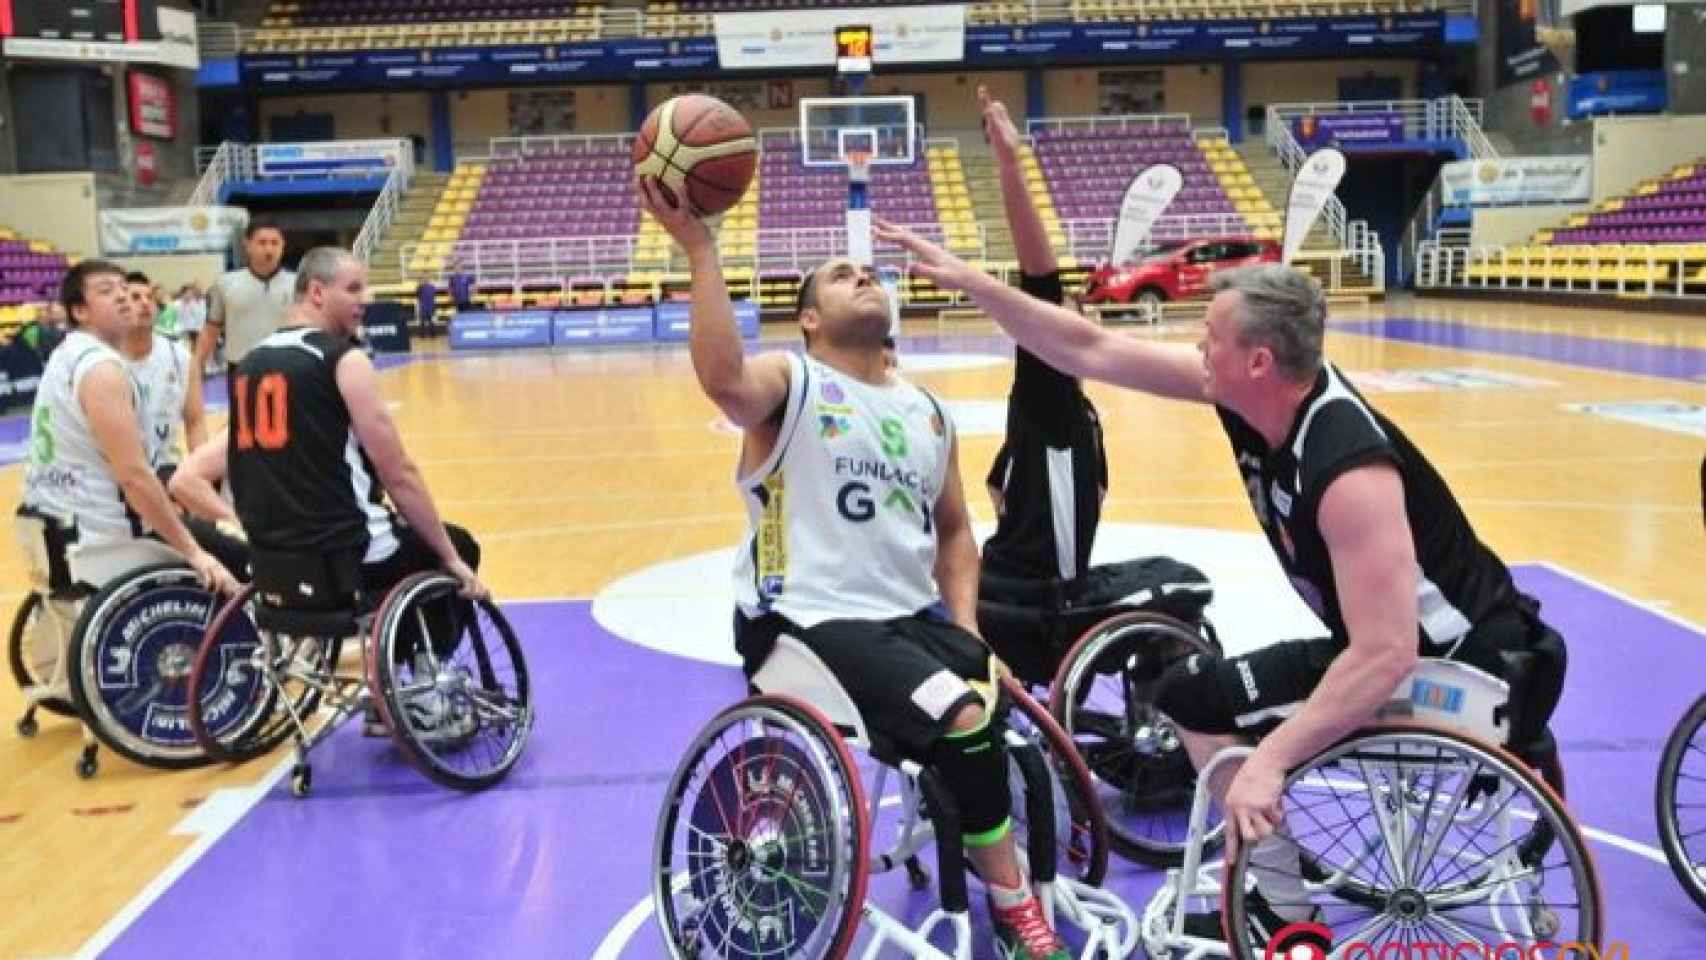 baloncesto silla ruedas bsr valladolid copa europa 1